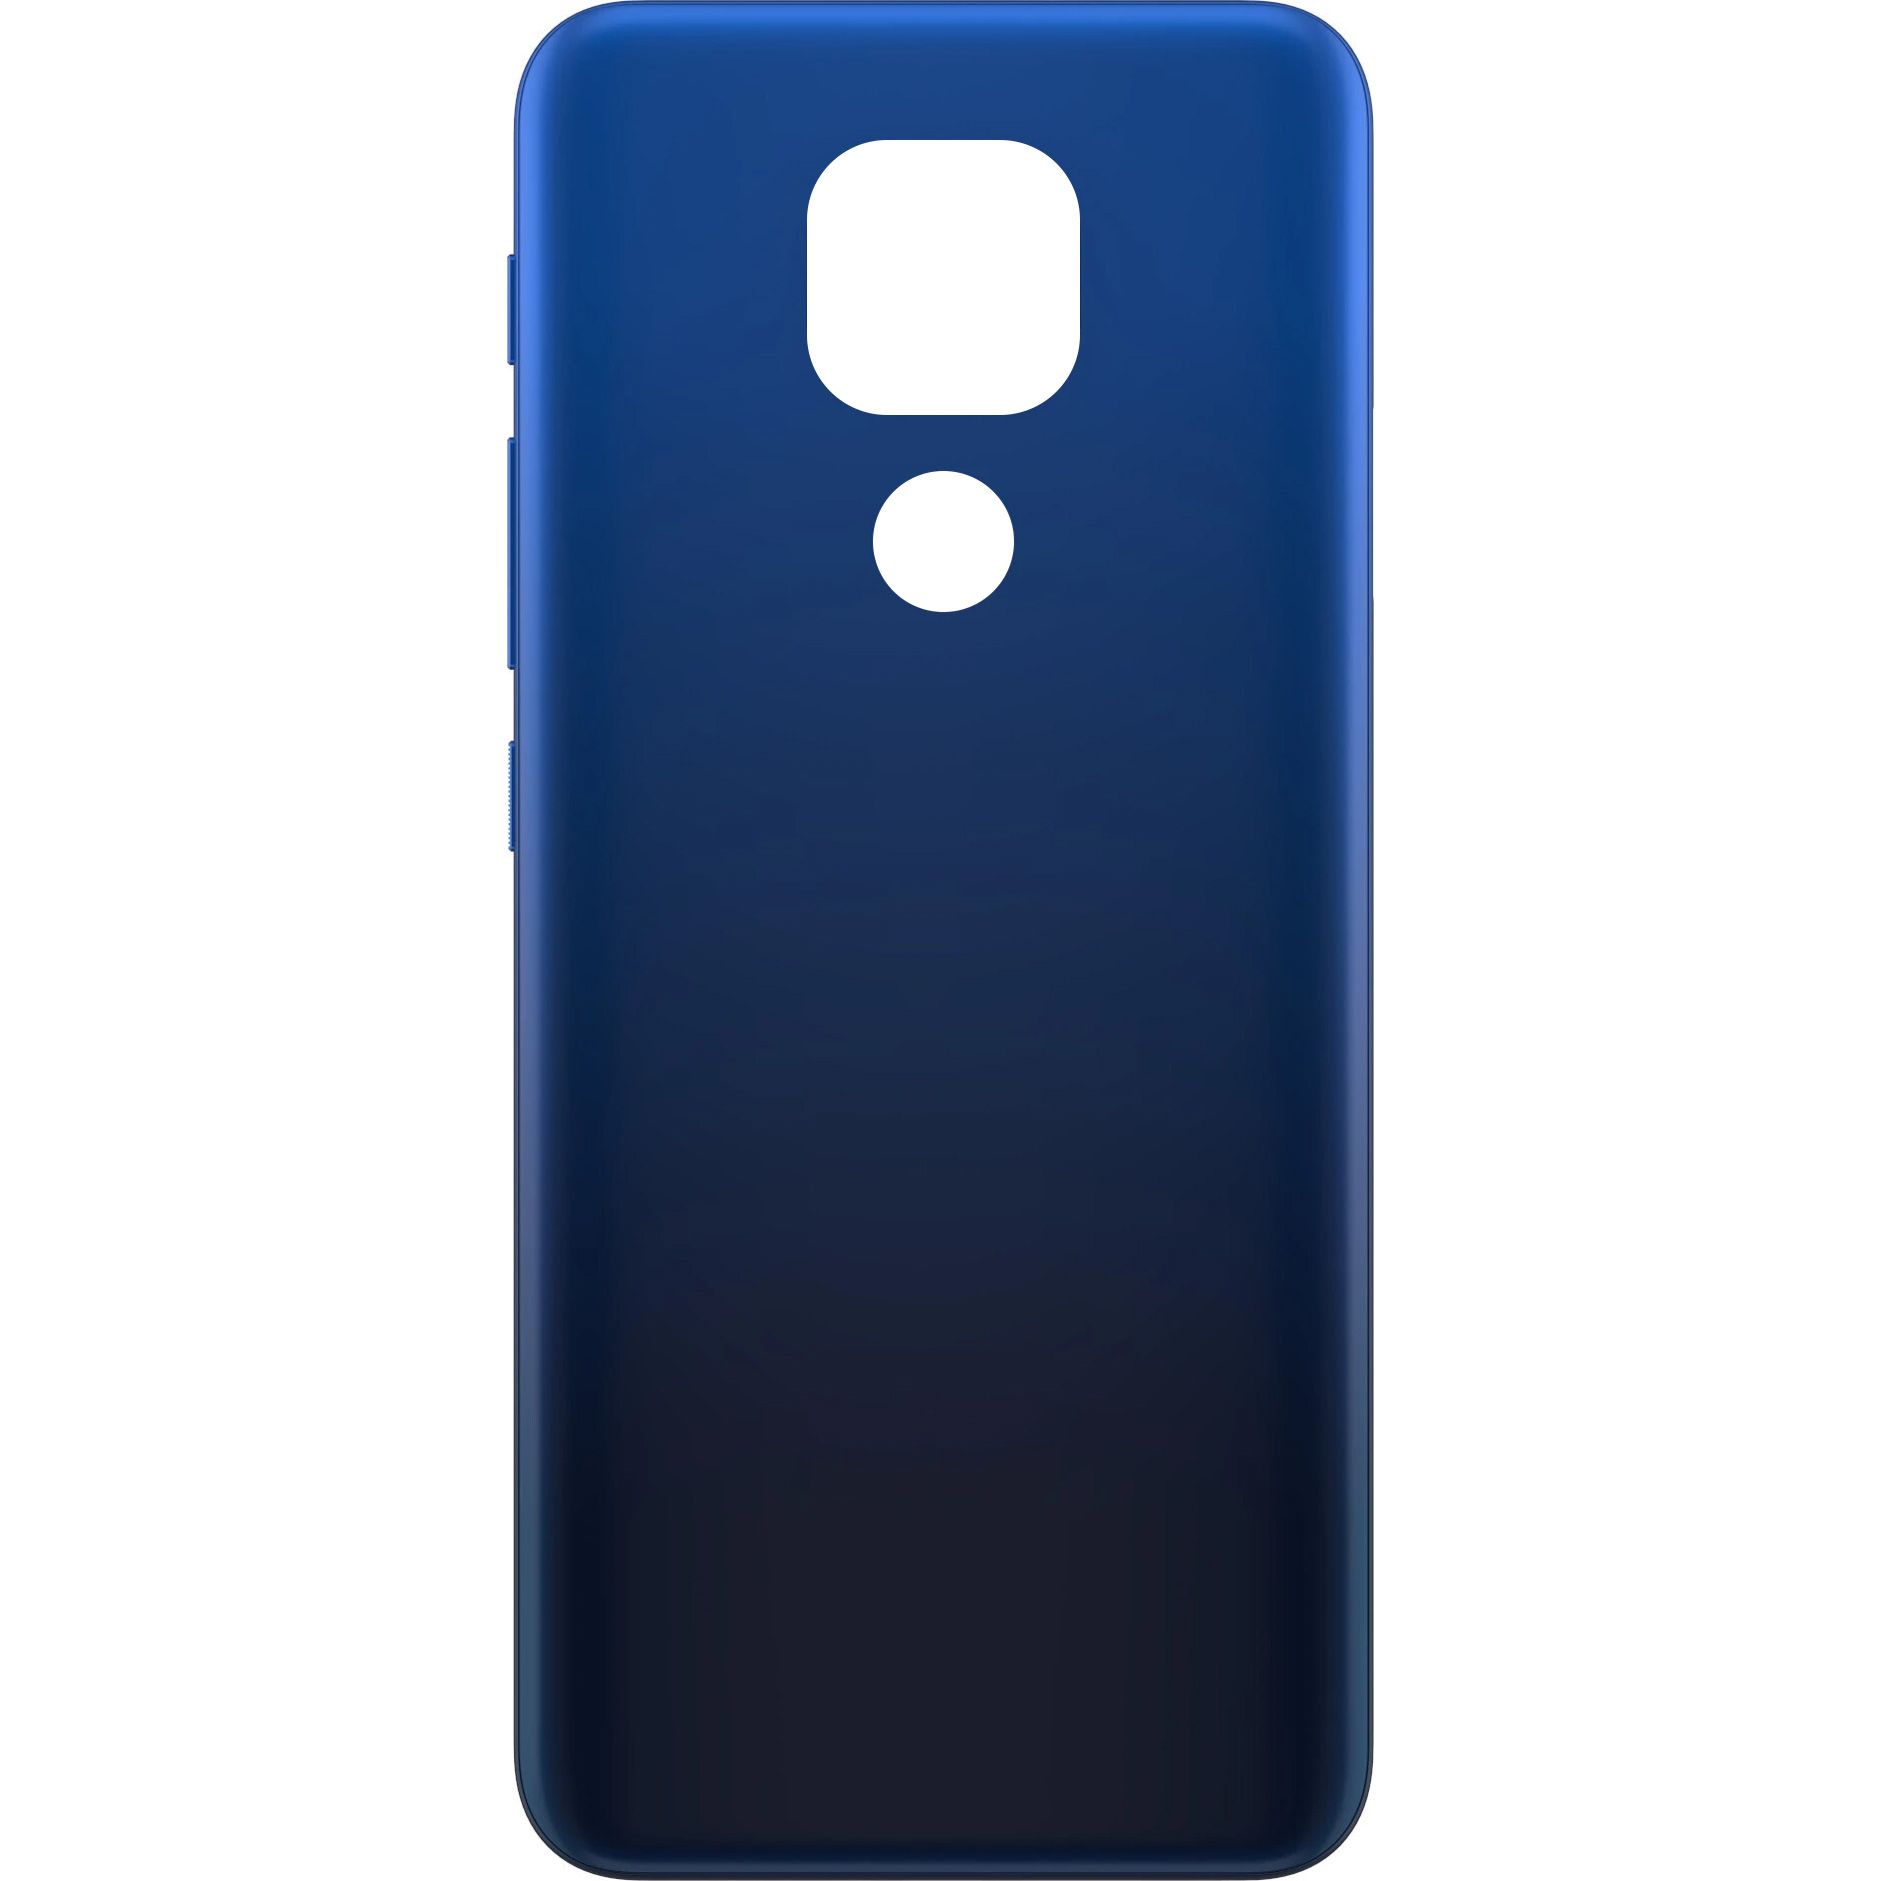 Battery Cover for Motorola Moto E7 Plus, Navy Blue